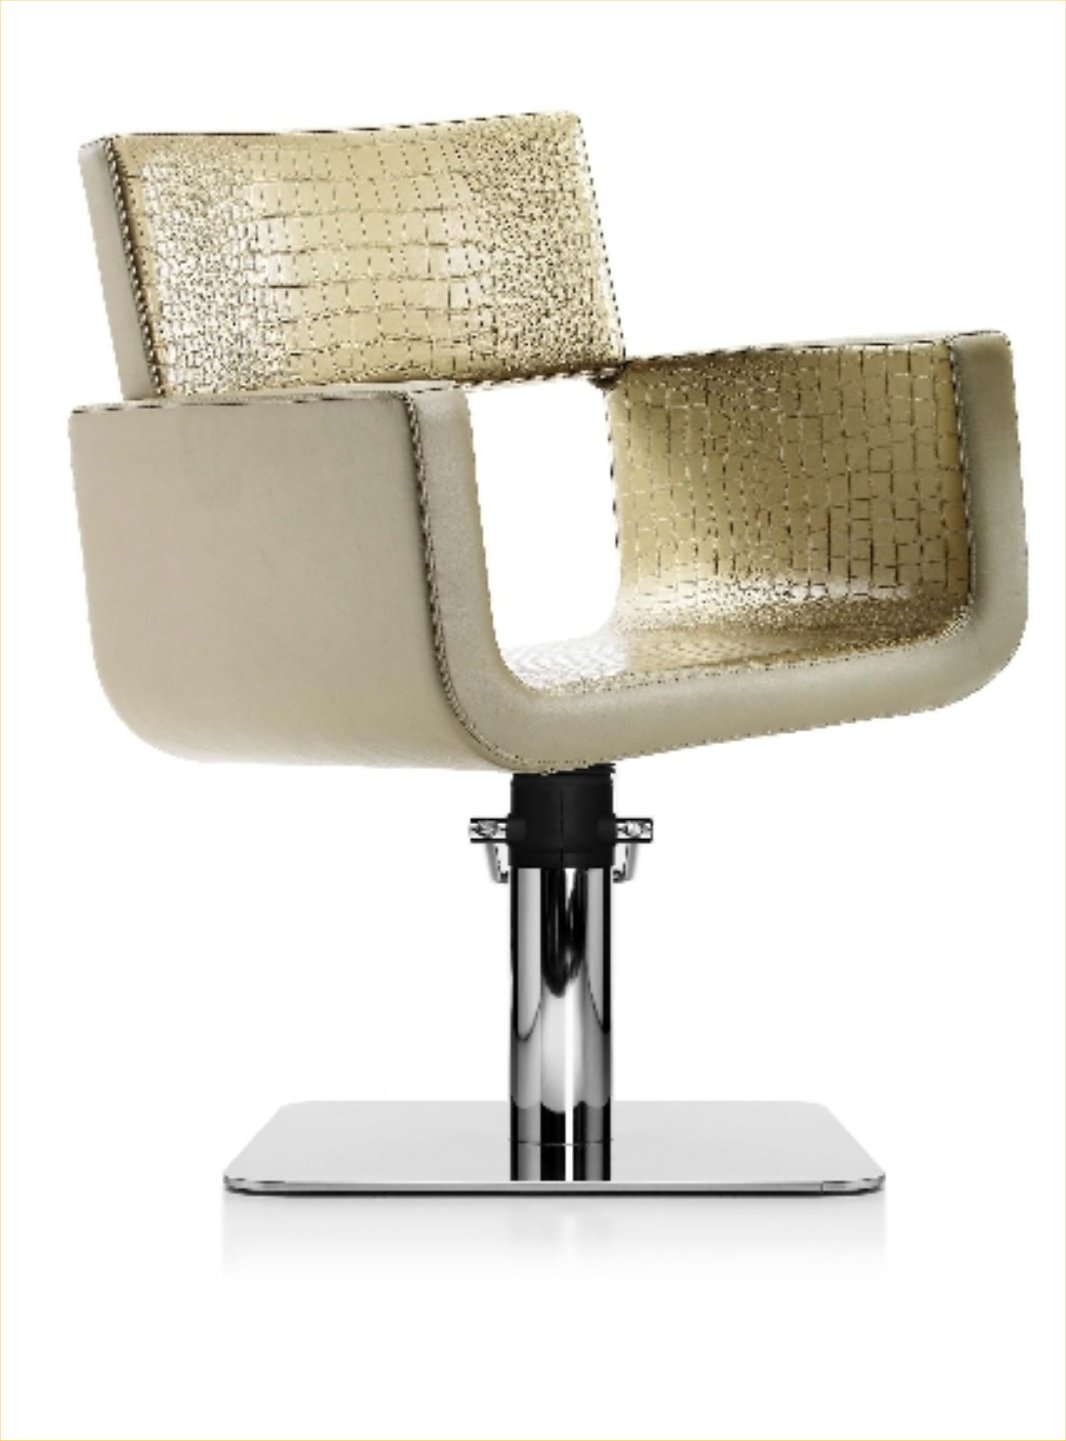 Pietranera Tau Styling Chair  62.57